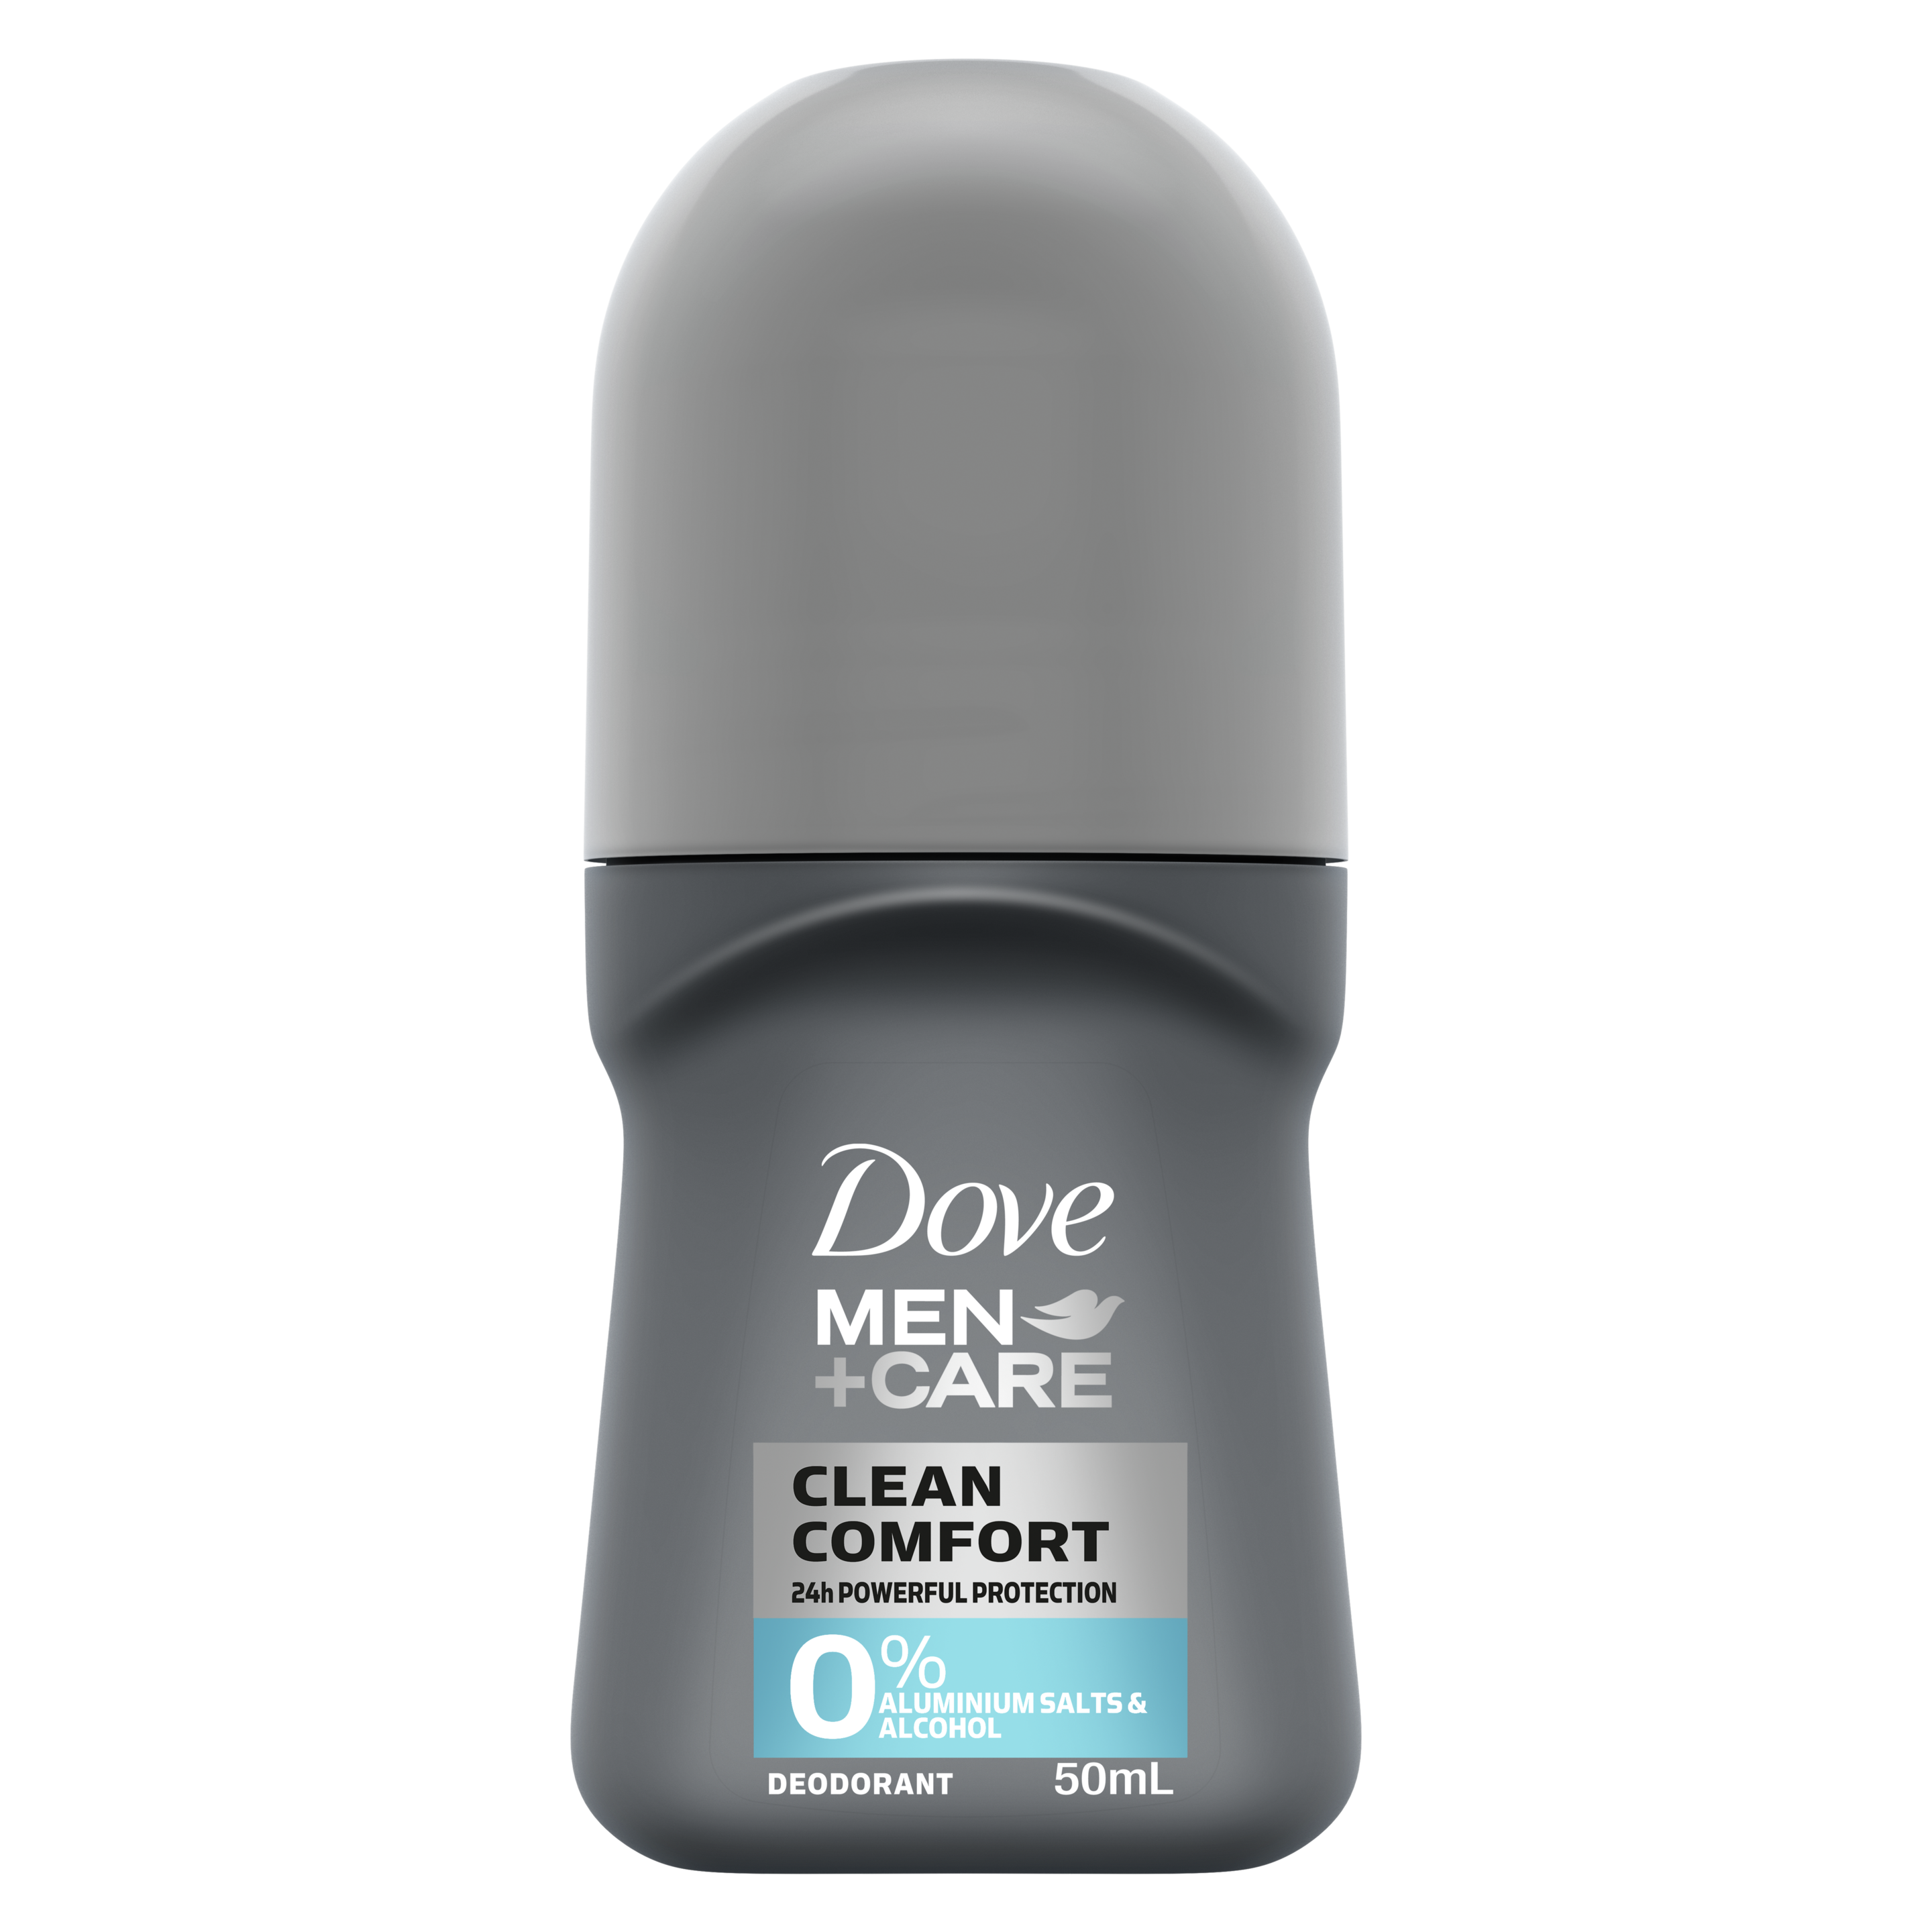 Dove Men+Care 0% Aluminium Roll On Deodorant Clean Comfort 50mL Text